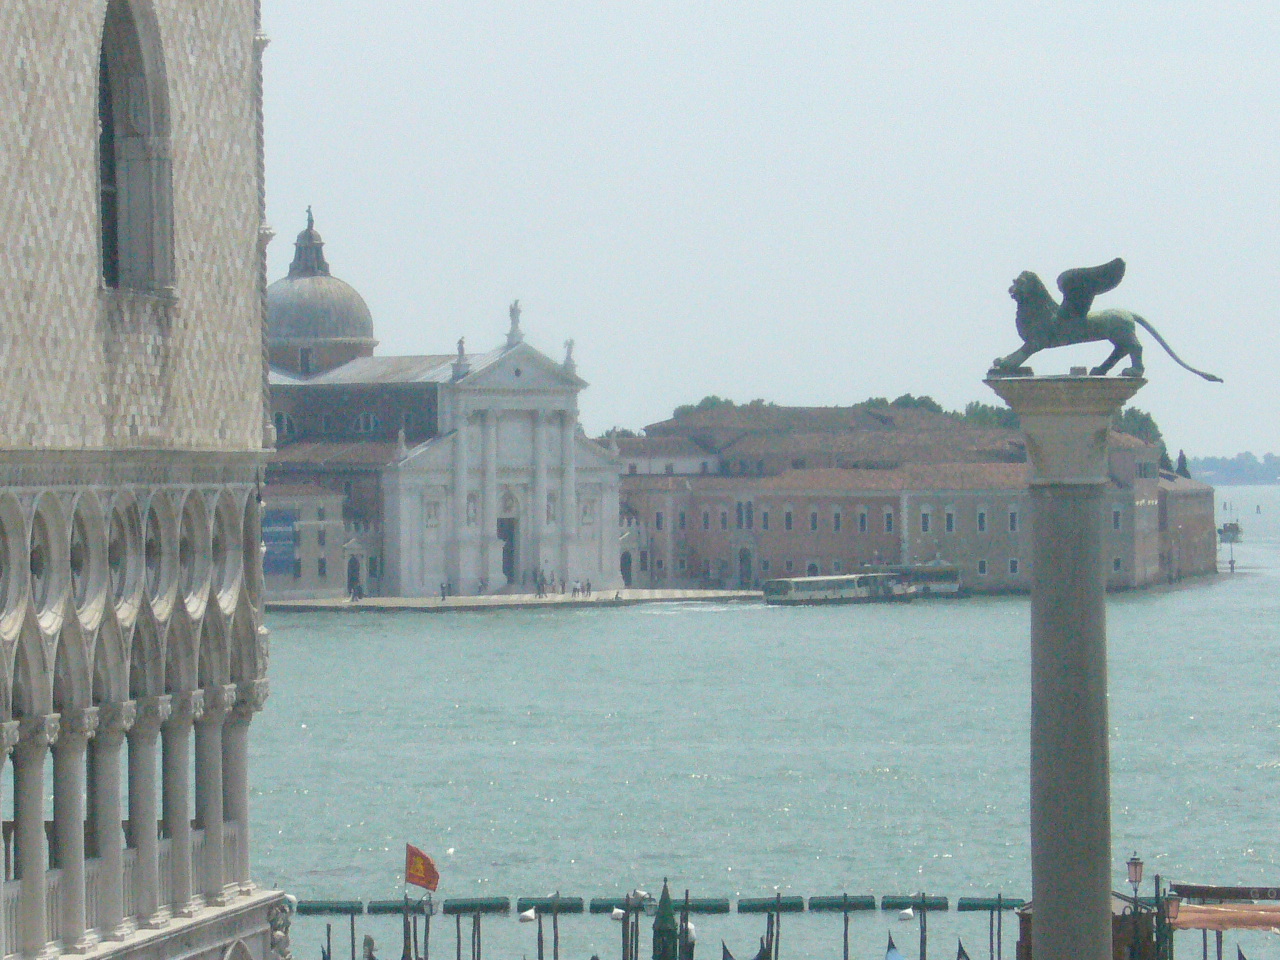 Il leone, simbolo di Venezia, troneggia sulla laguna